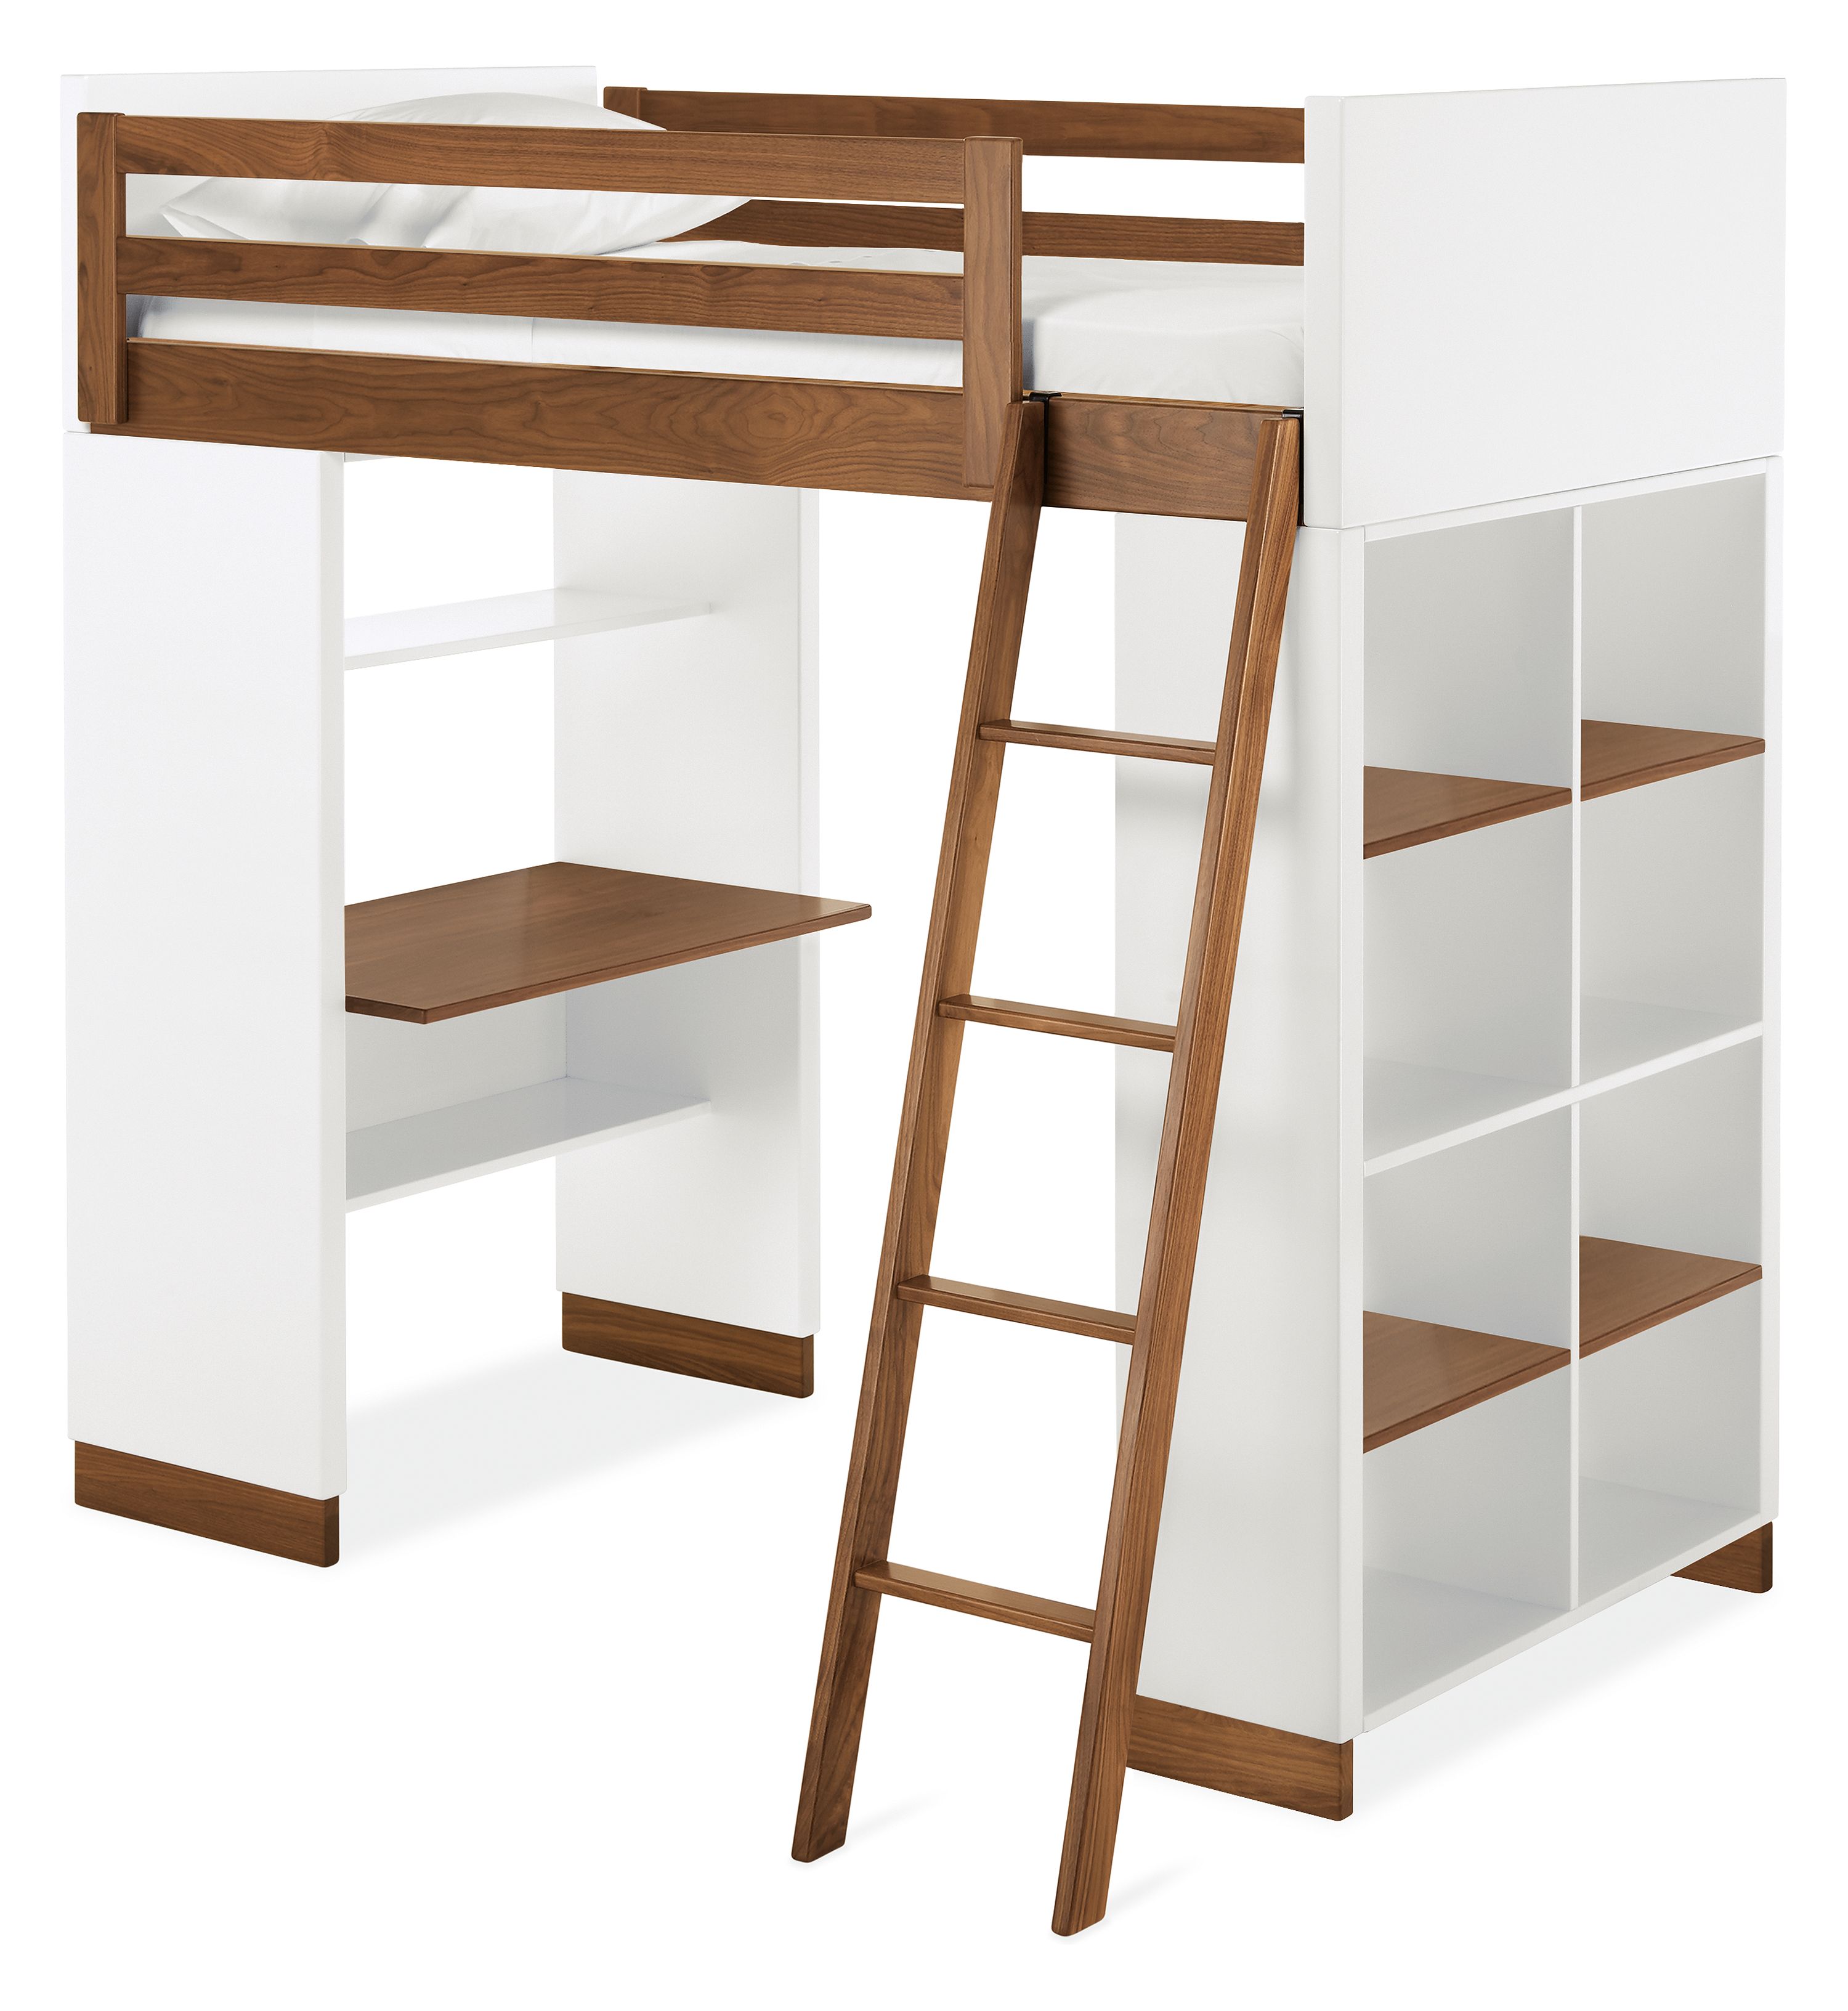 Moda Kids Loft With Shelves Modern Bunk Beds Loft Beds